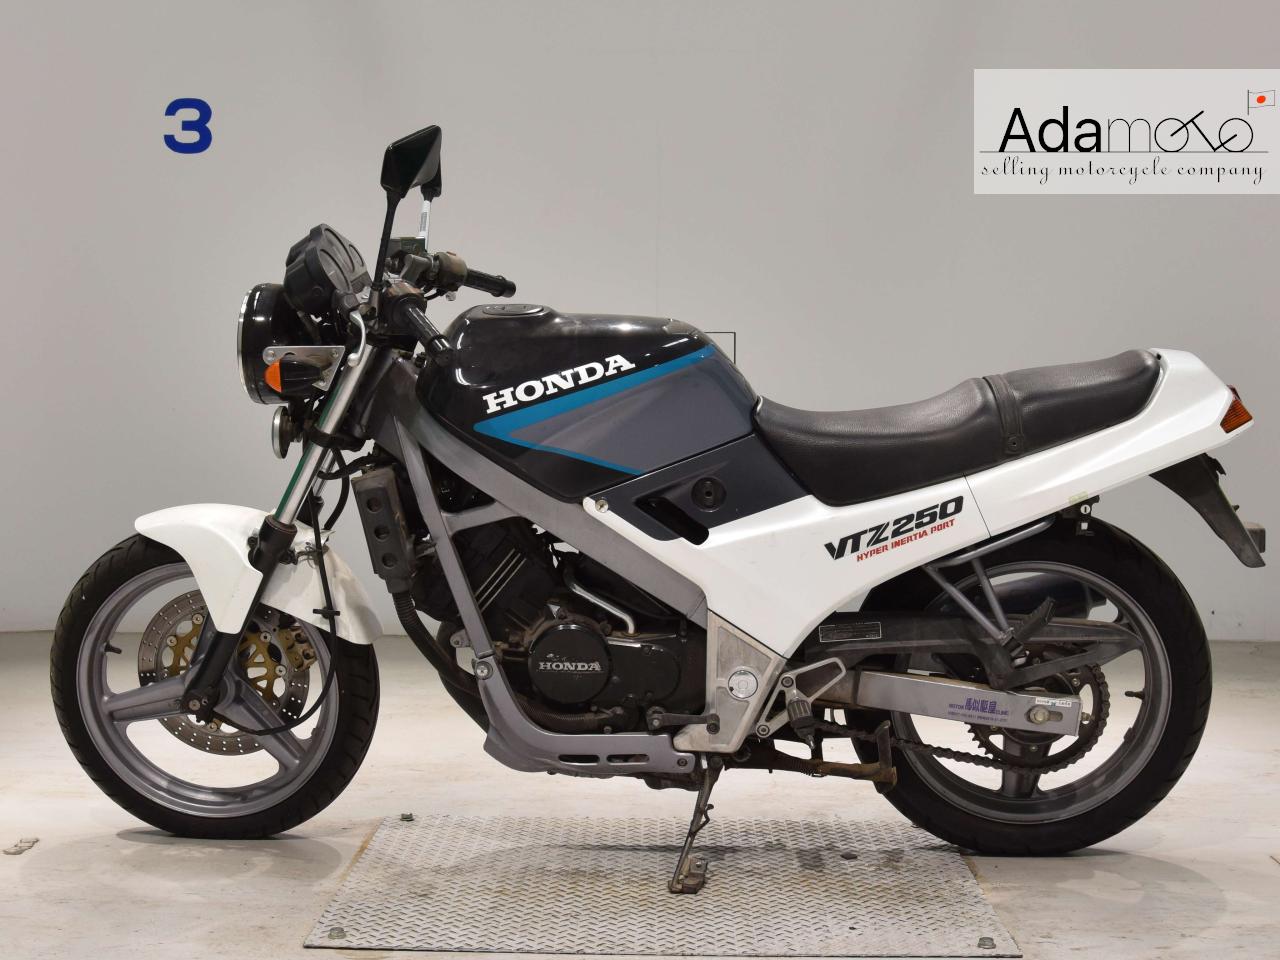 Honda VTZ250 - Adamoto - Motorcycles from Japan